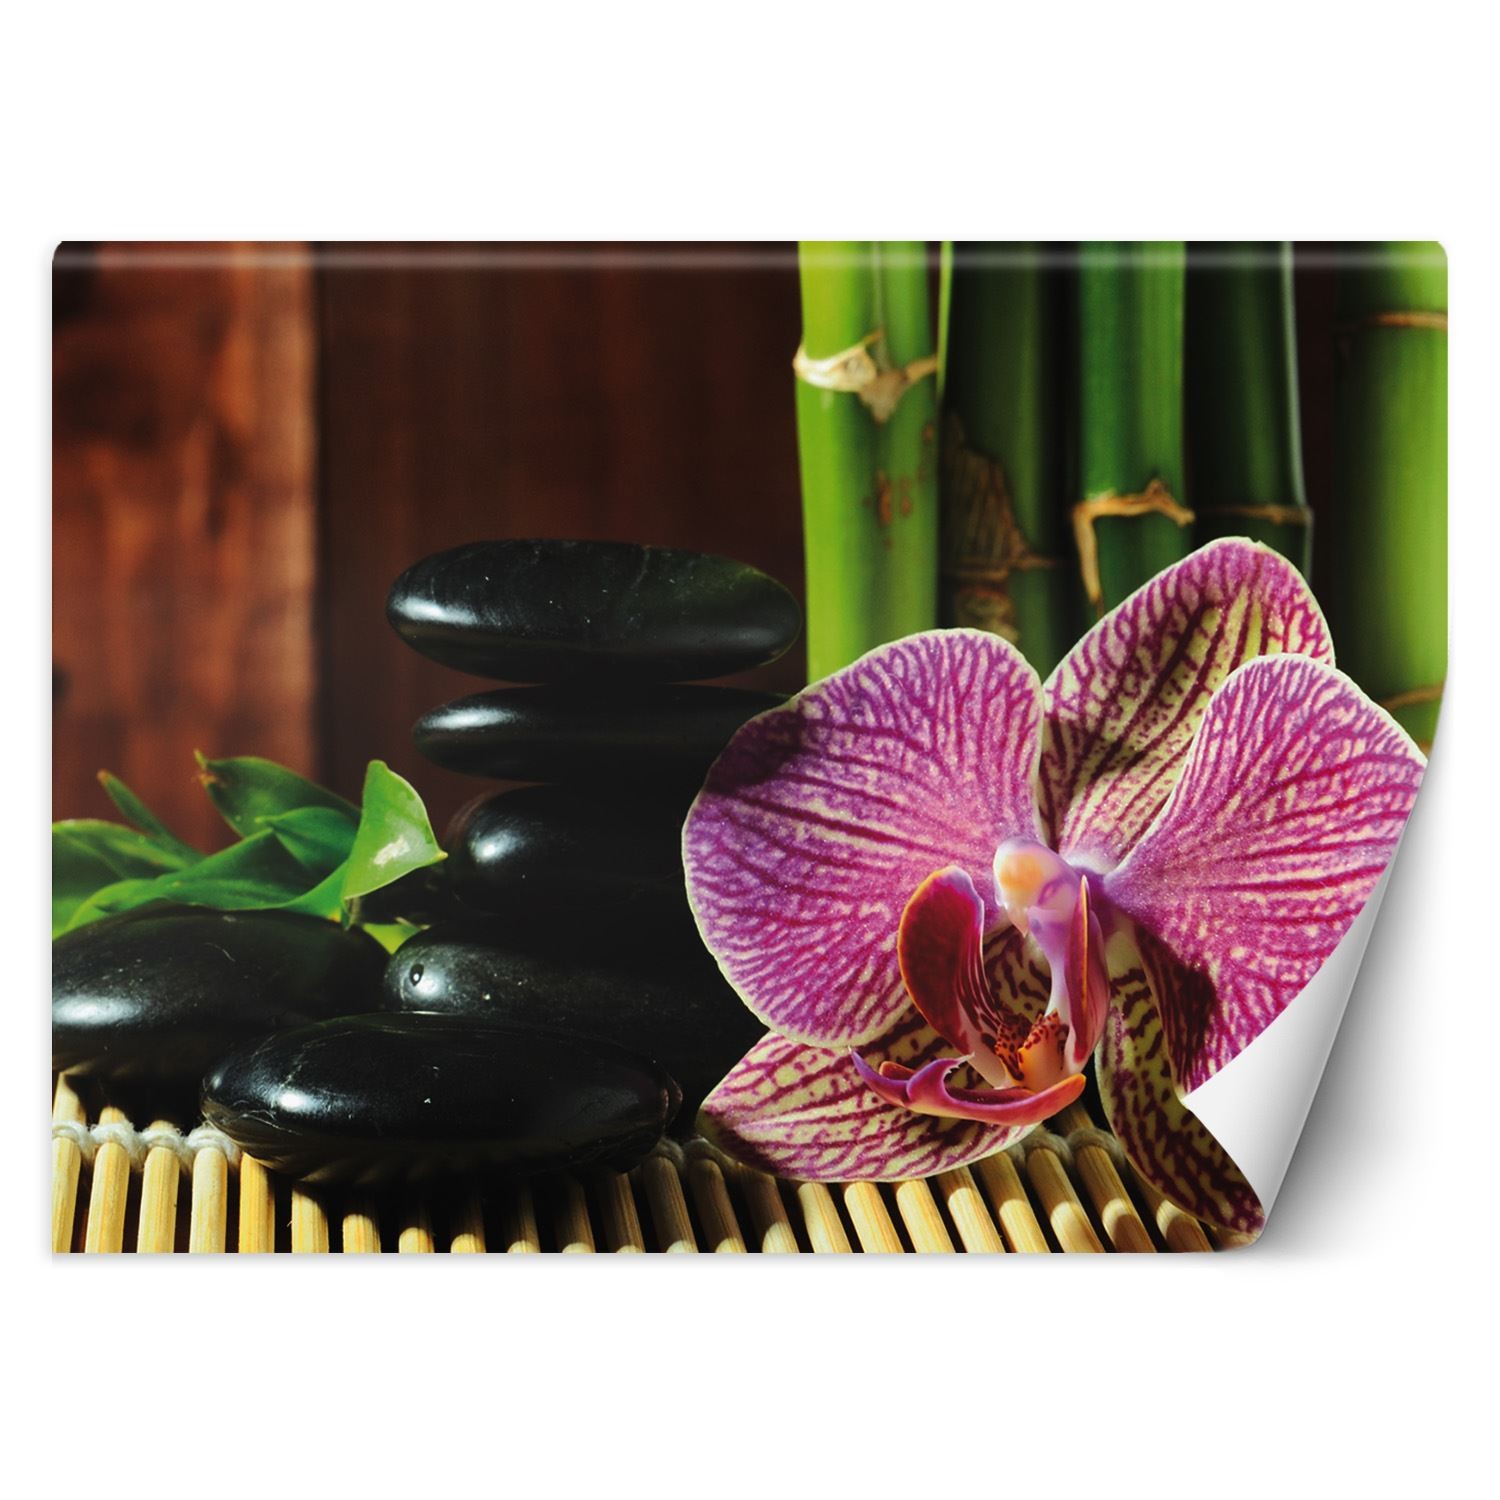 Trend24 – Behang – Orchid – Behangpapier – Fotobehang – Behang Woonkamer – 250x175x2 cm – Incl. behanglijm